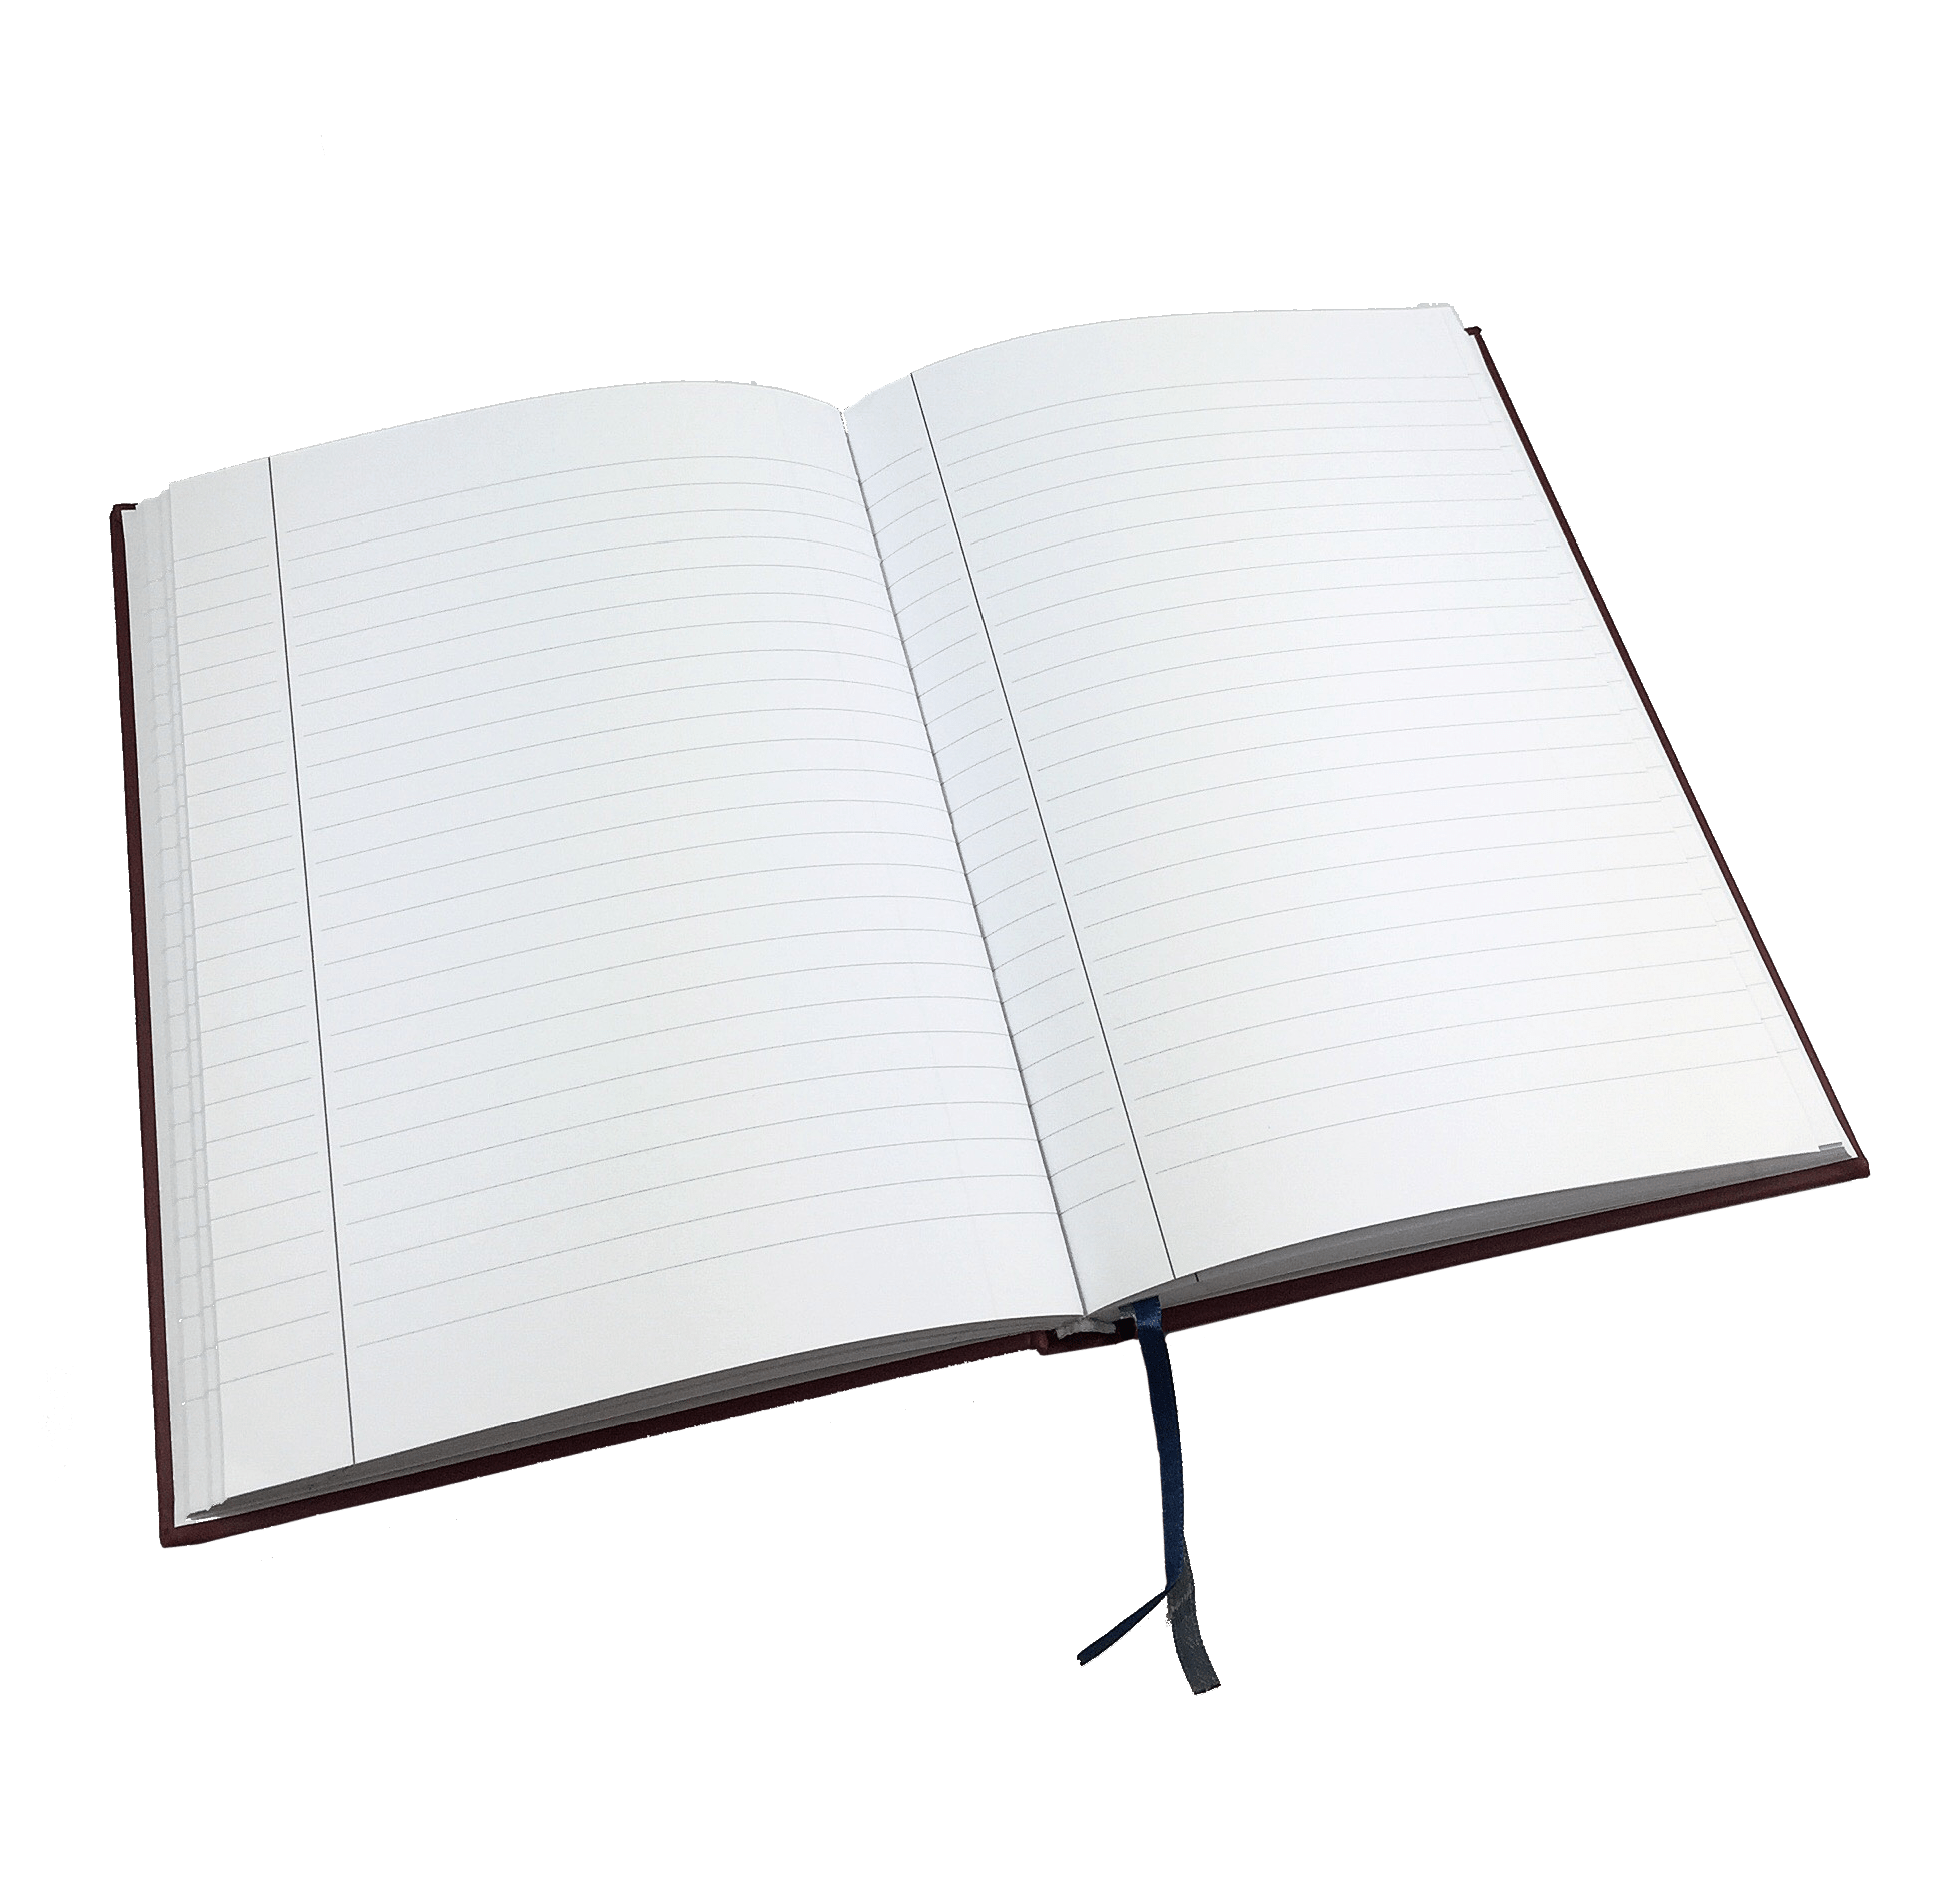 Directors Notebook